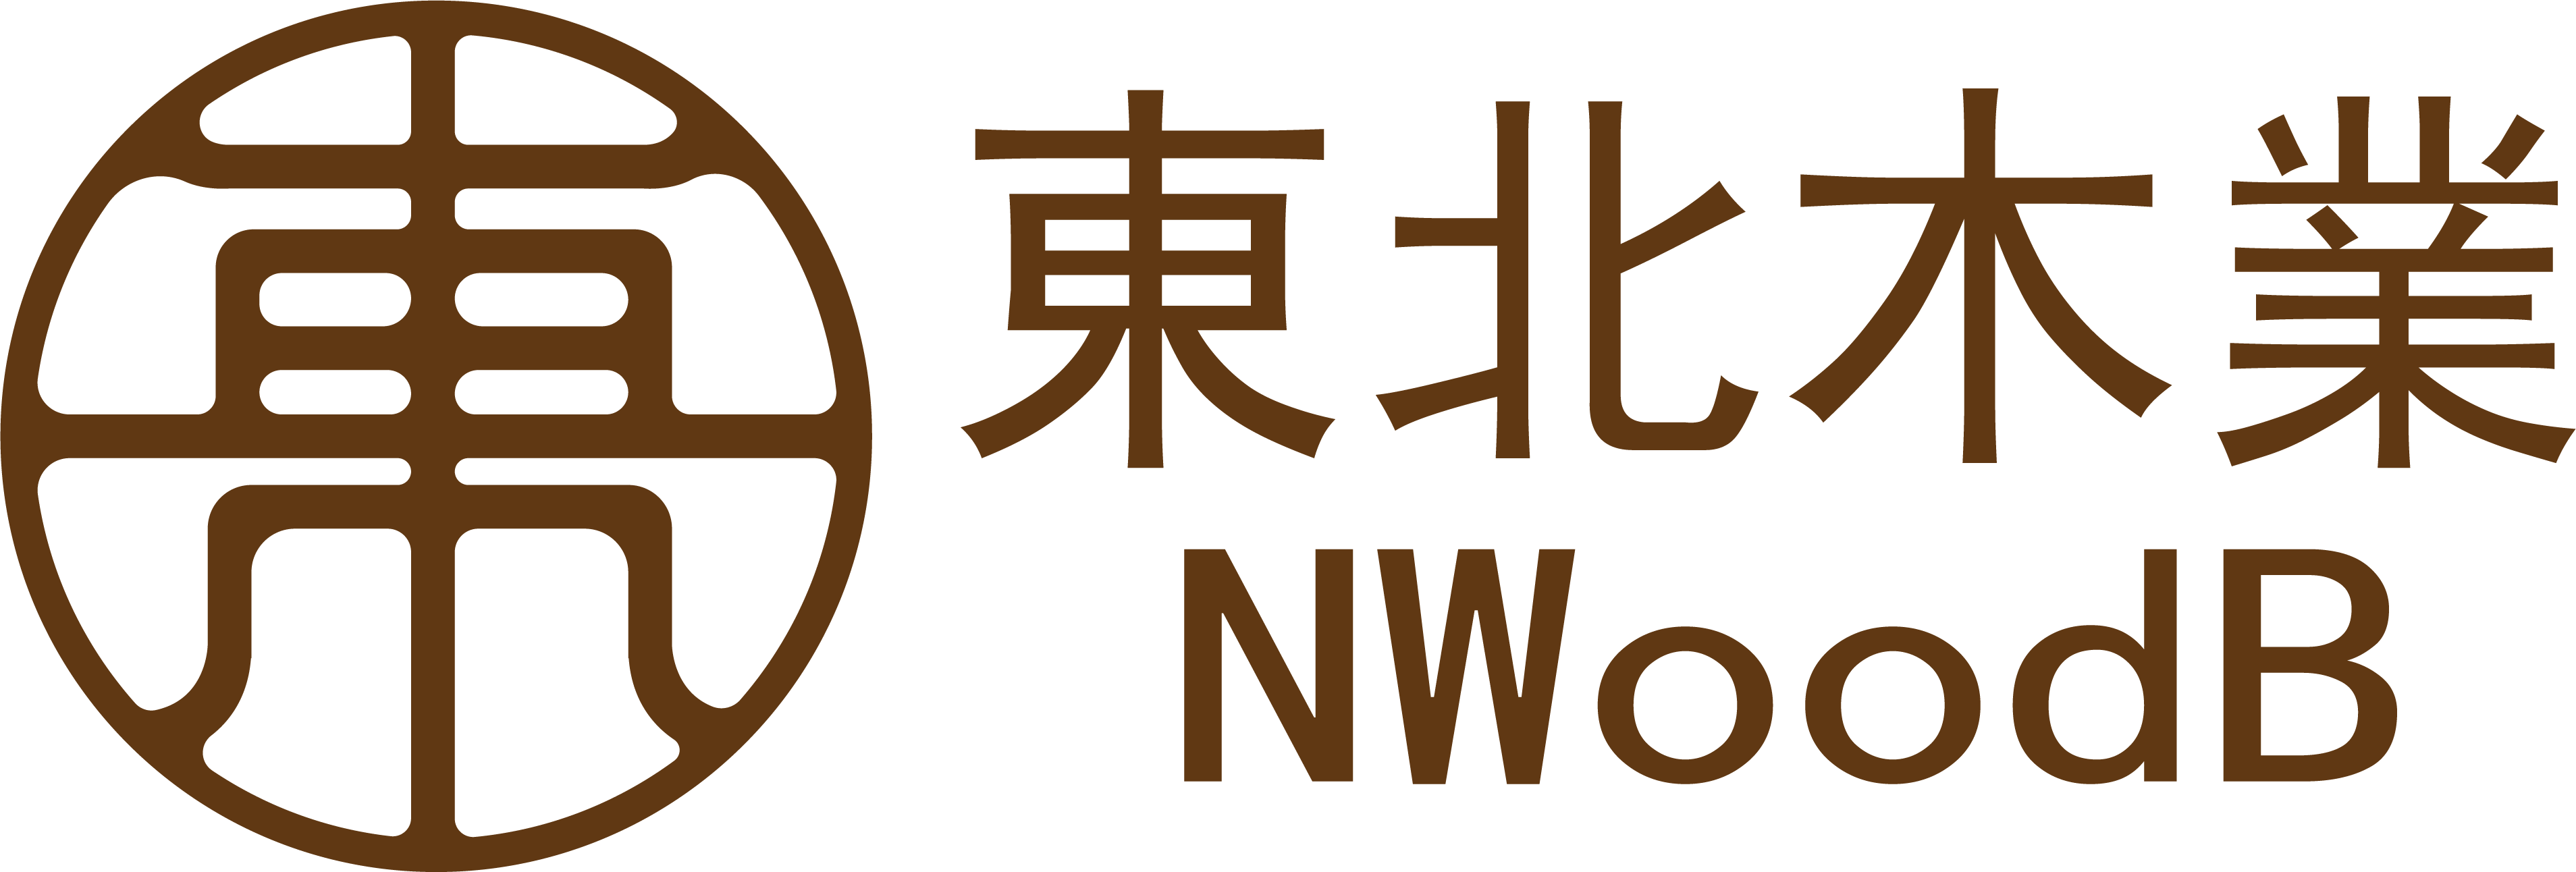 東北木業NwoodB｜客製化訂製原木桌板｜戶外景觀｜精緻實木拼板系列 logo